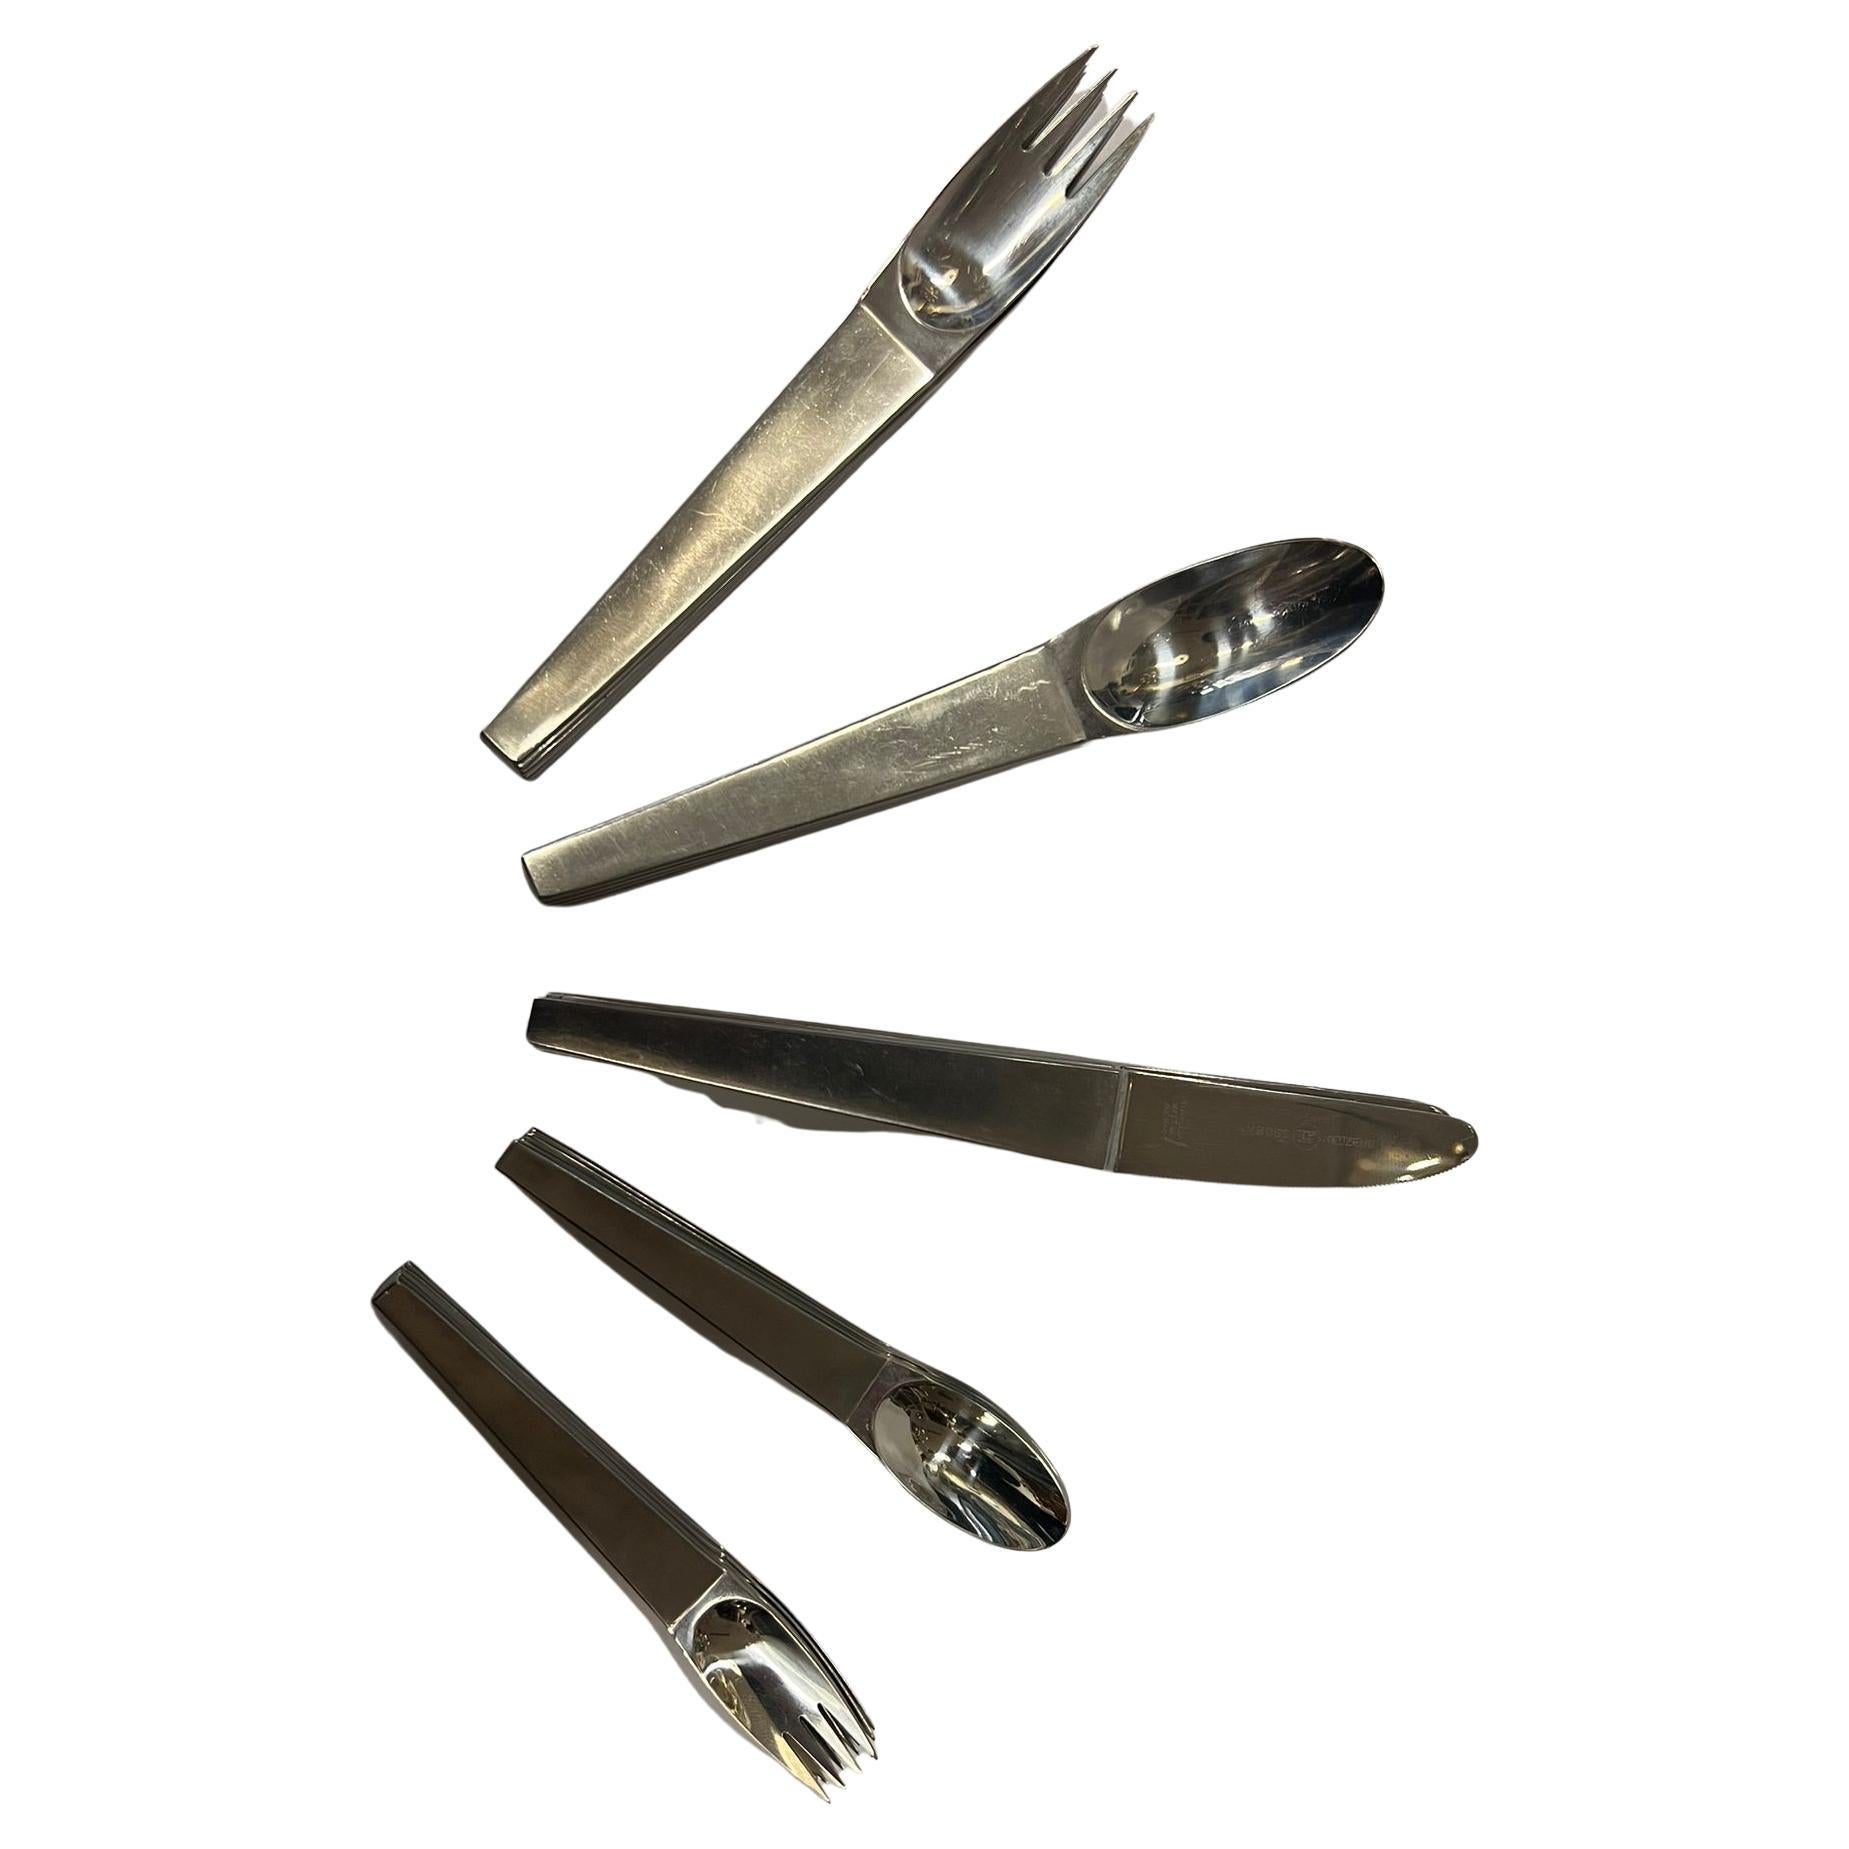 Design Carl Auböck, version Amboss set de couverts, no.2060, 1950 Vienne Autriche

composé de 6 couteaux, 6 cuillères, 6 fourchettes, 6 cuillères à café, 6 fourchettes à gâteau 